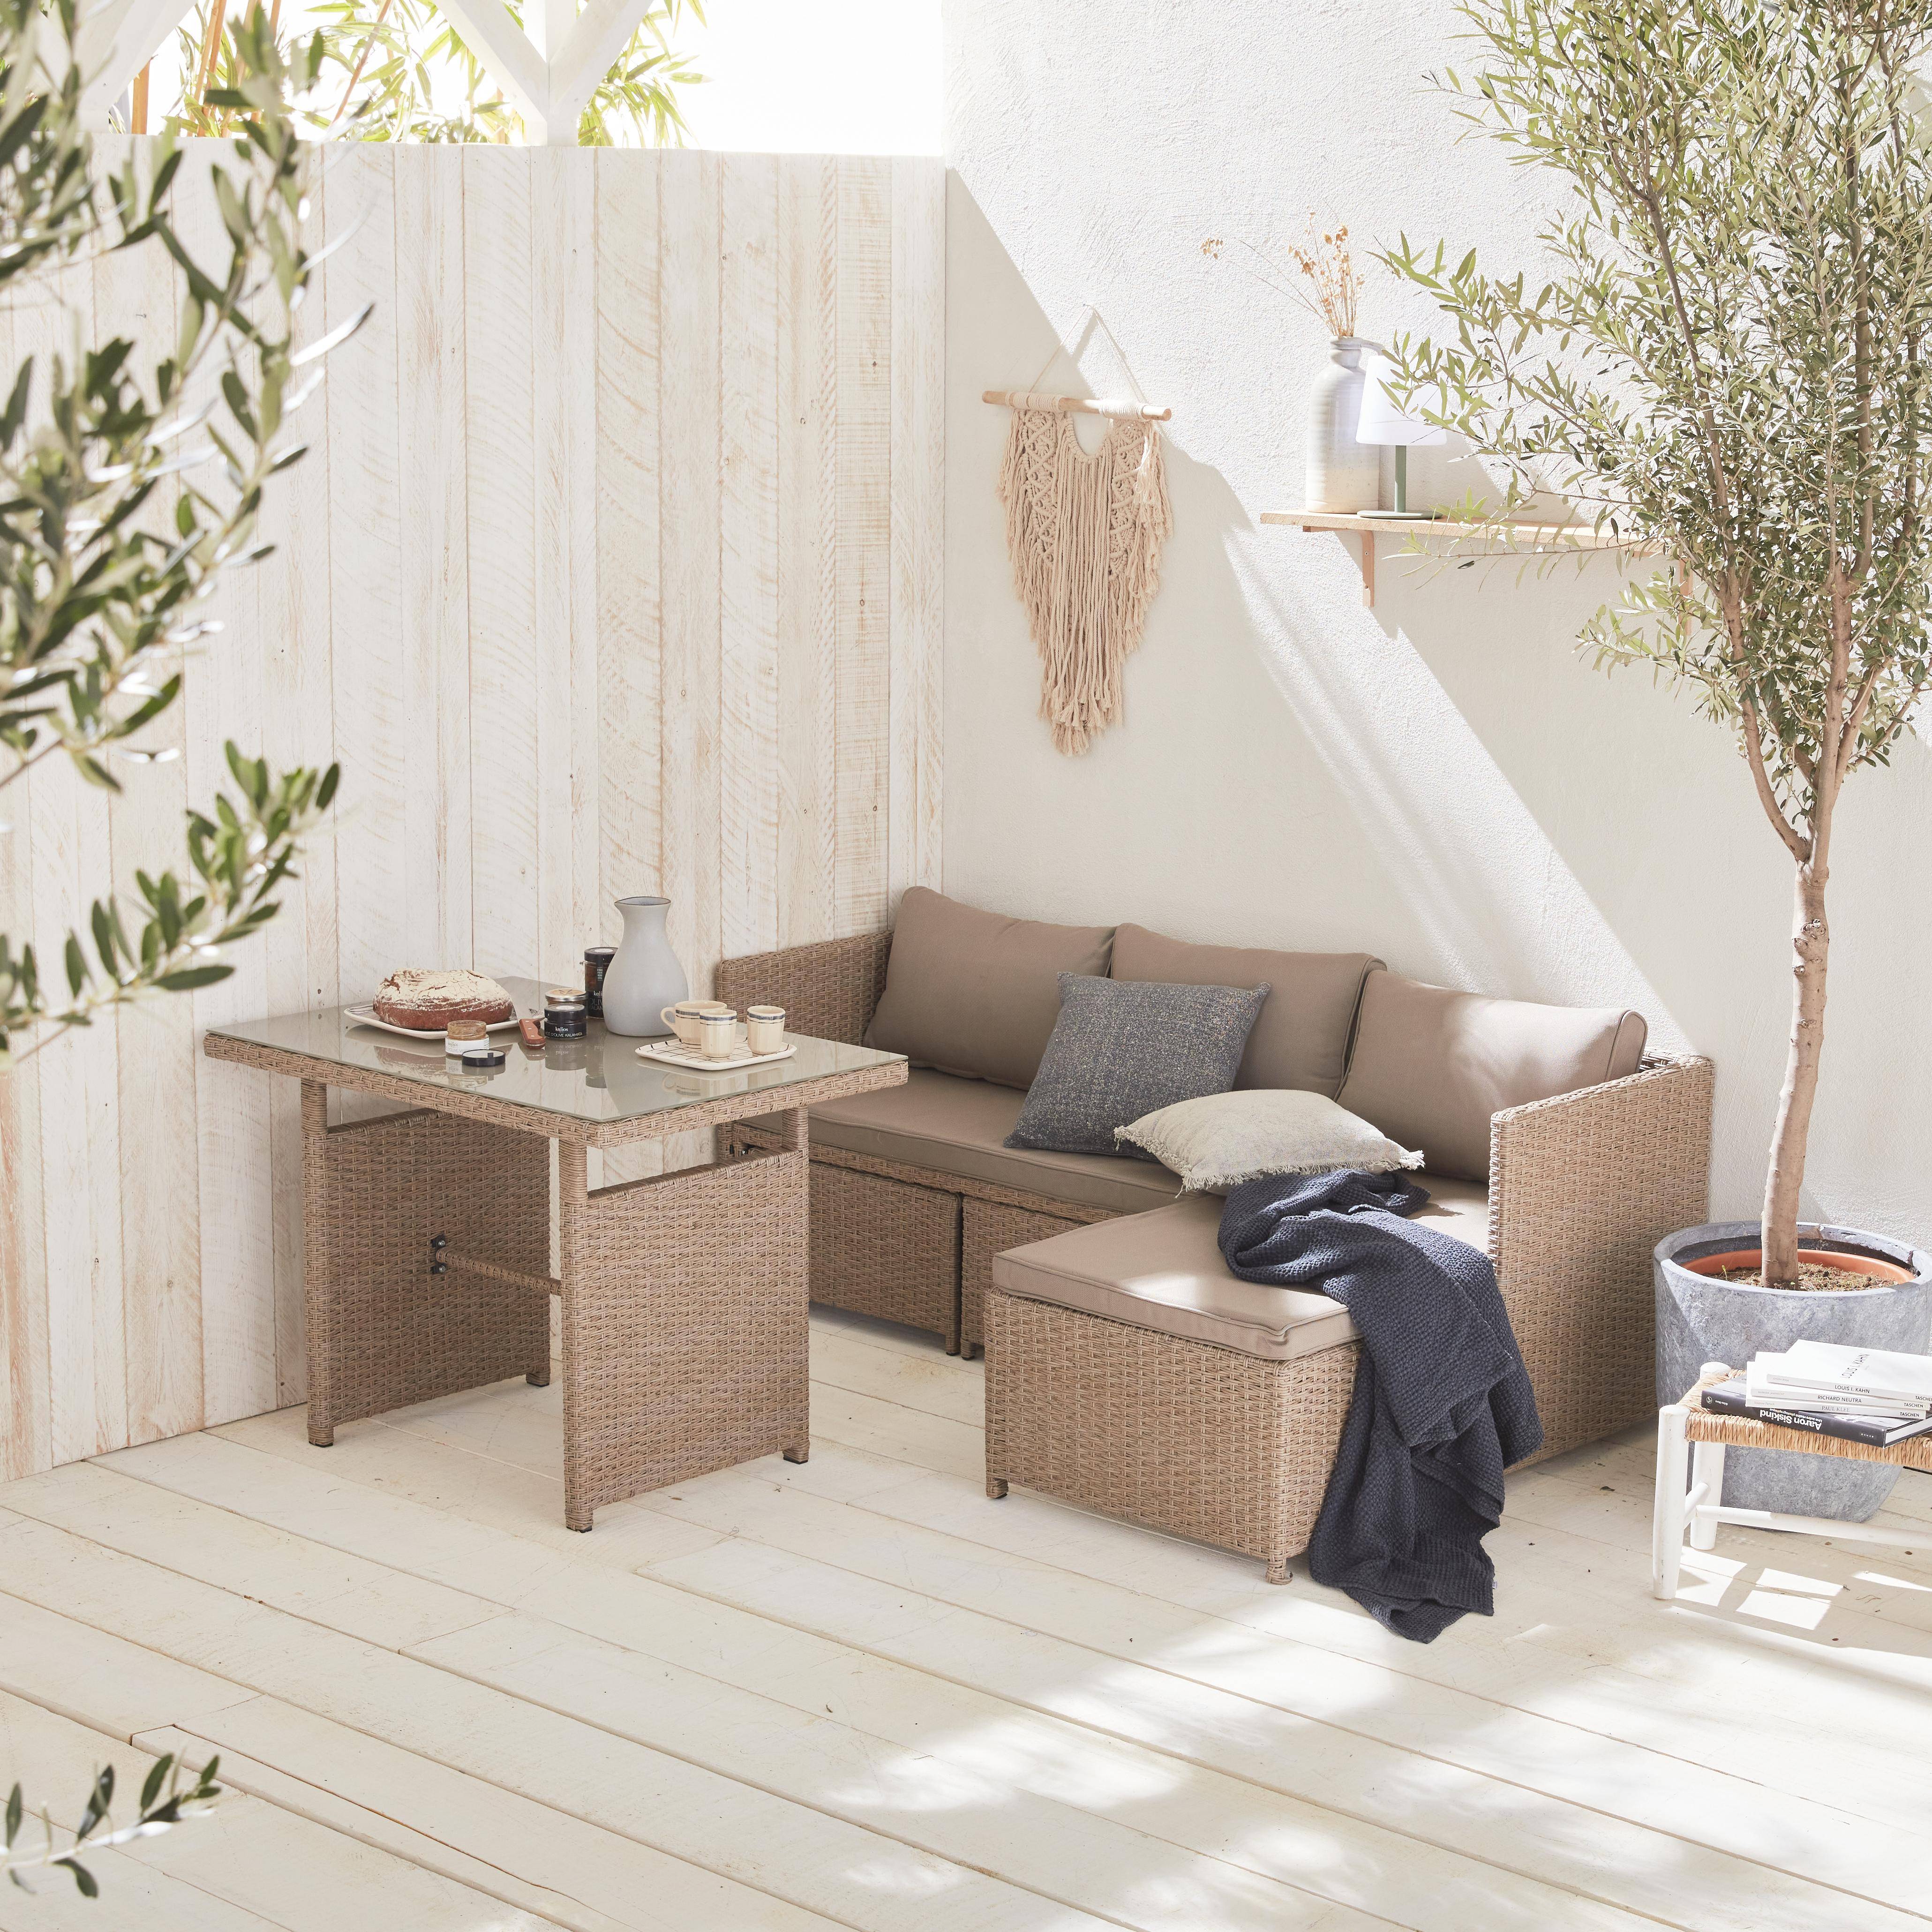 Conjunto de muebles de jardín de 6 plazas - Reggiano - Resina natural, cojines beige, mesa de jardín con sofá, chaise longue y 2 pufs incorporados Photo2